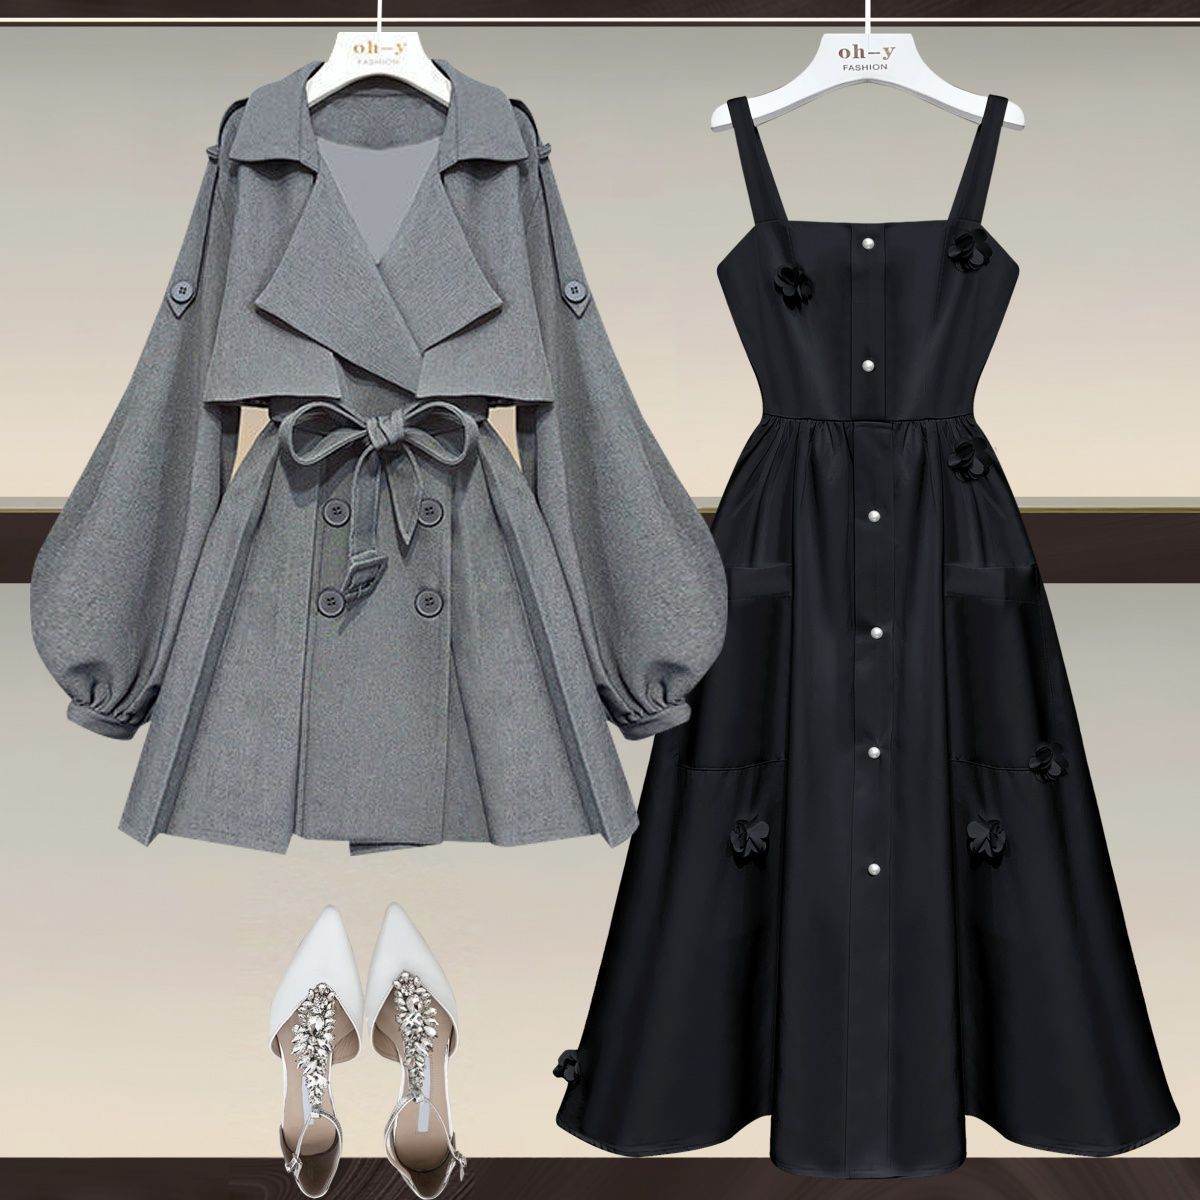 灰色風衣+黑色吊帶洋裝/套裝